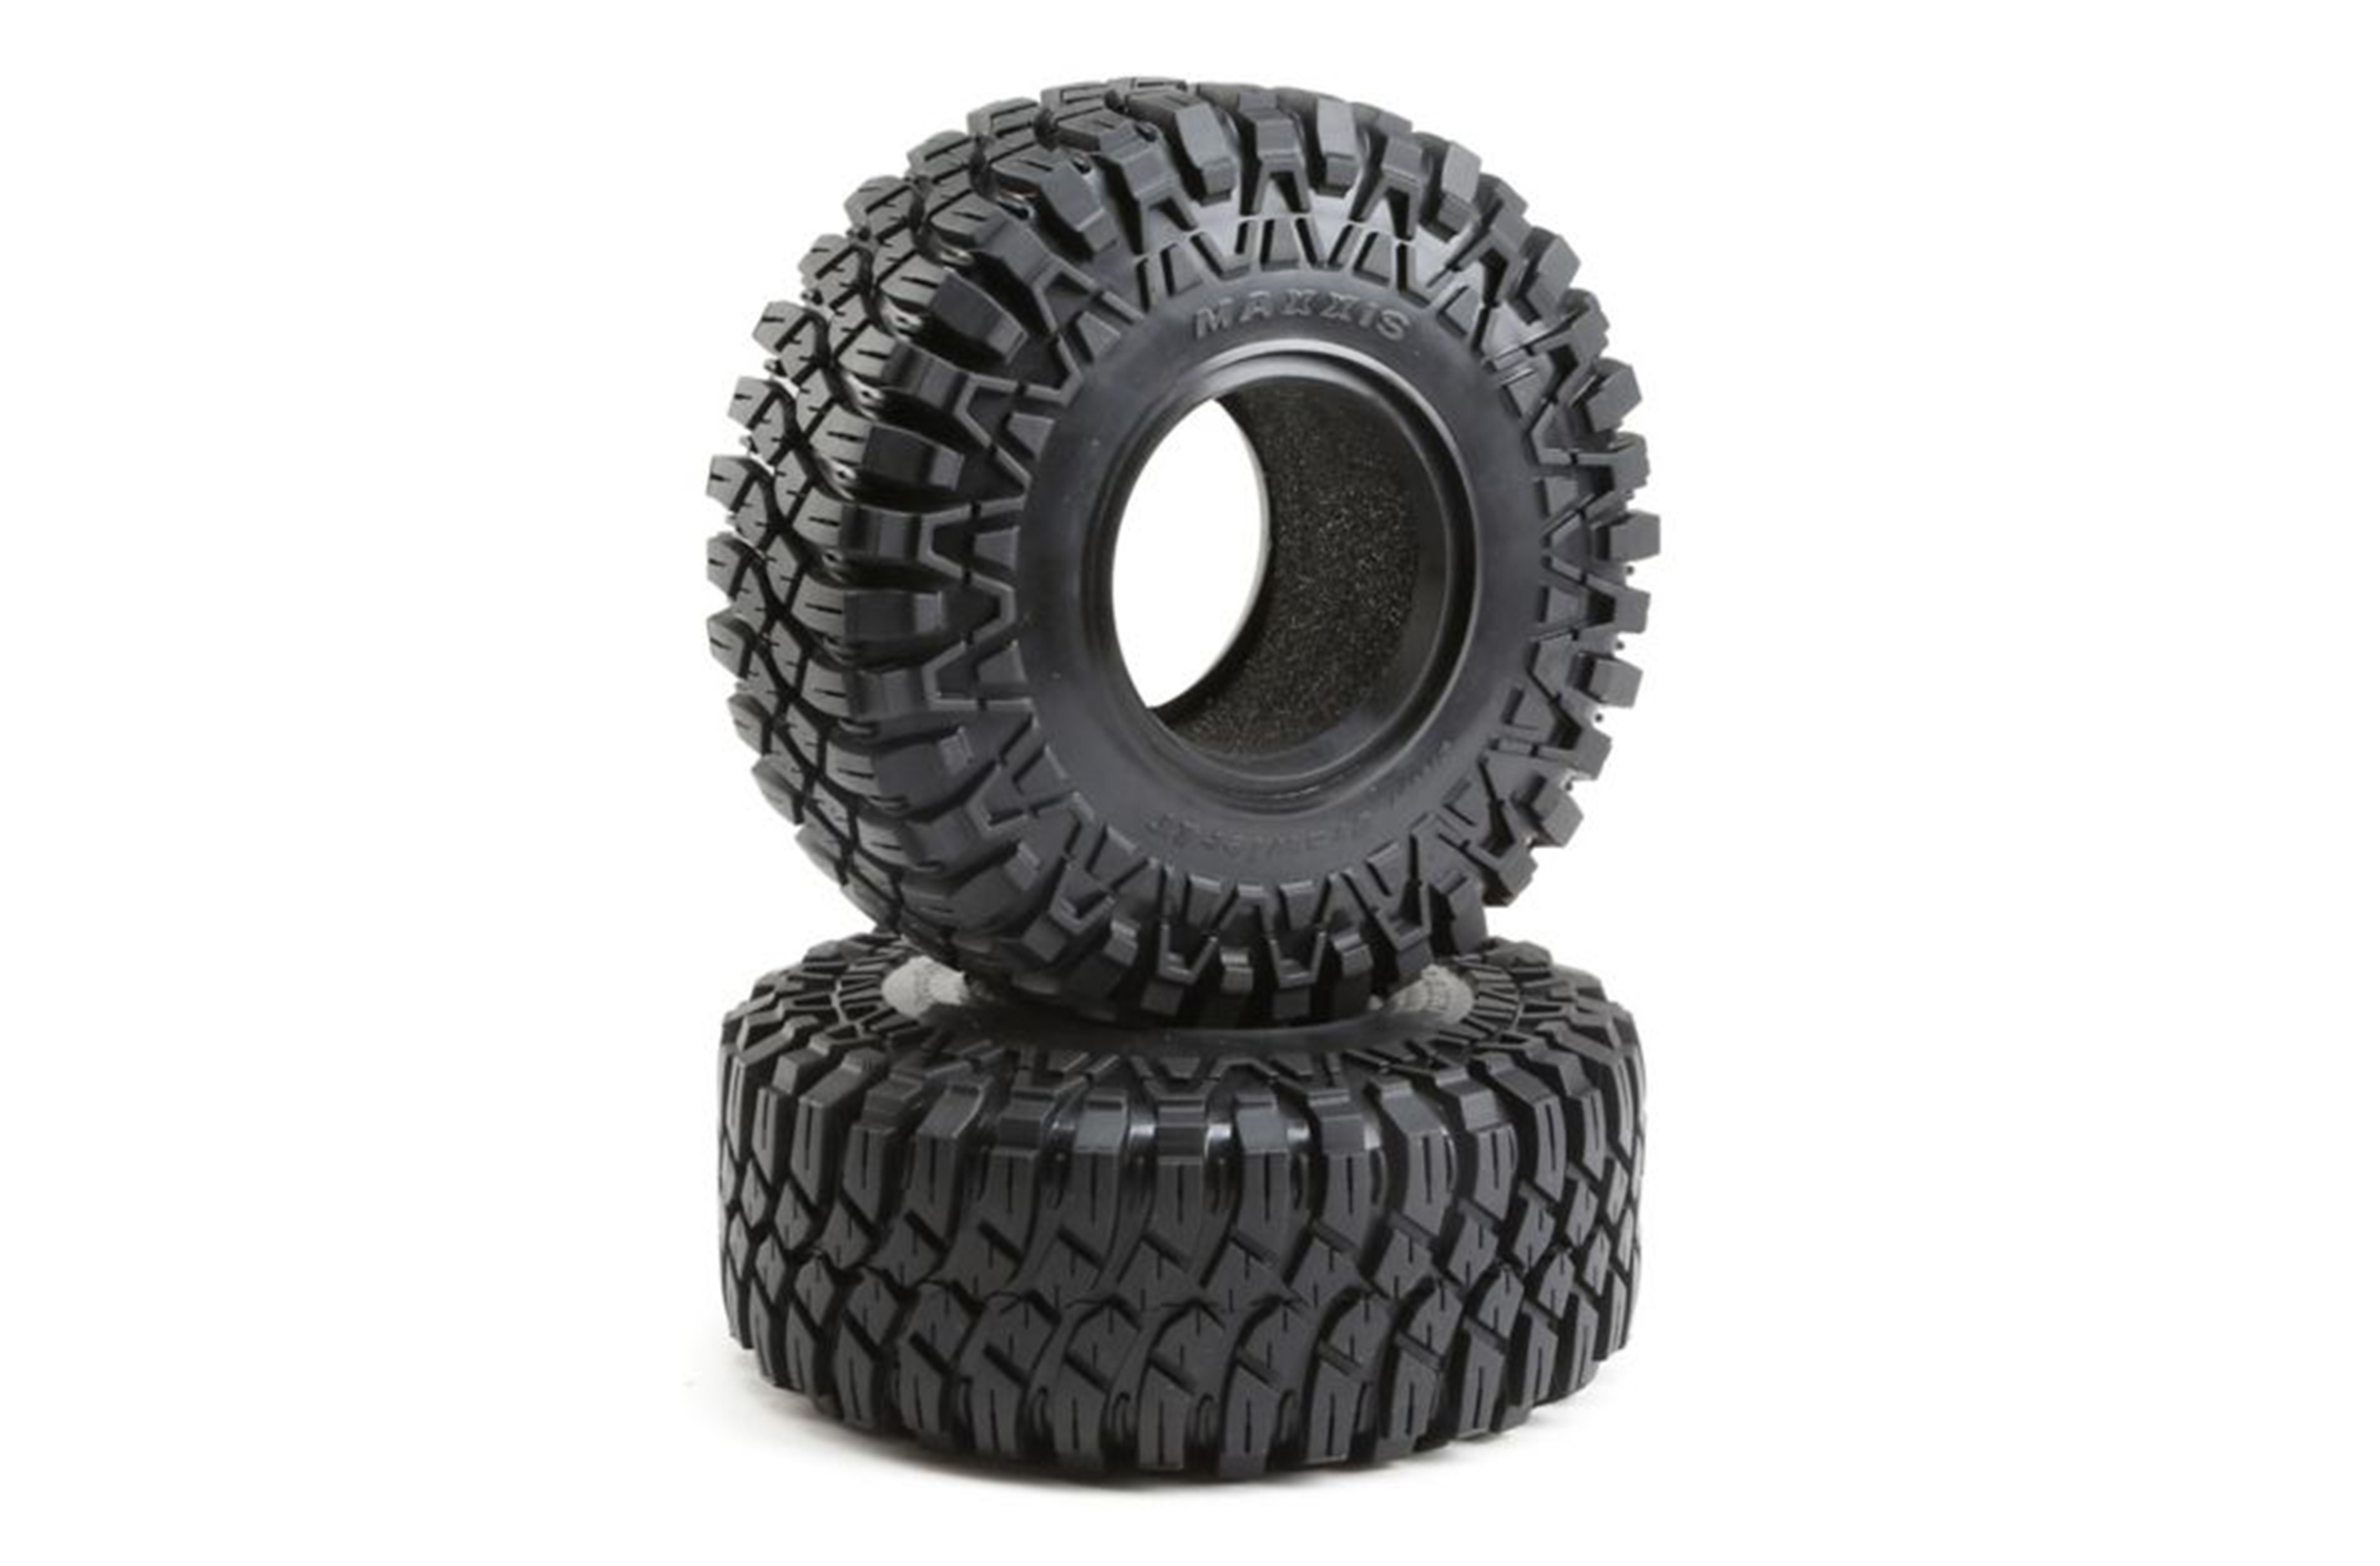 LOS45030 Losi Maxxis Creepy Crawler LT tyres, for Super Rock Rey